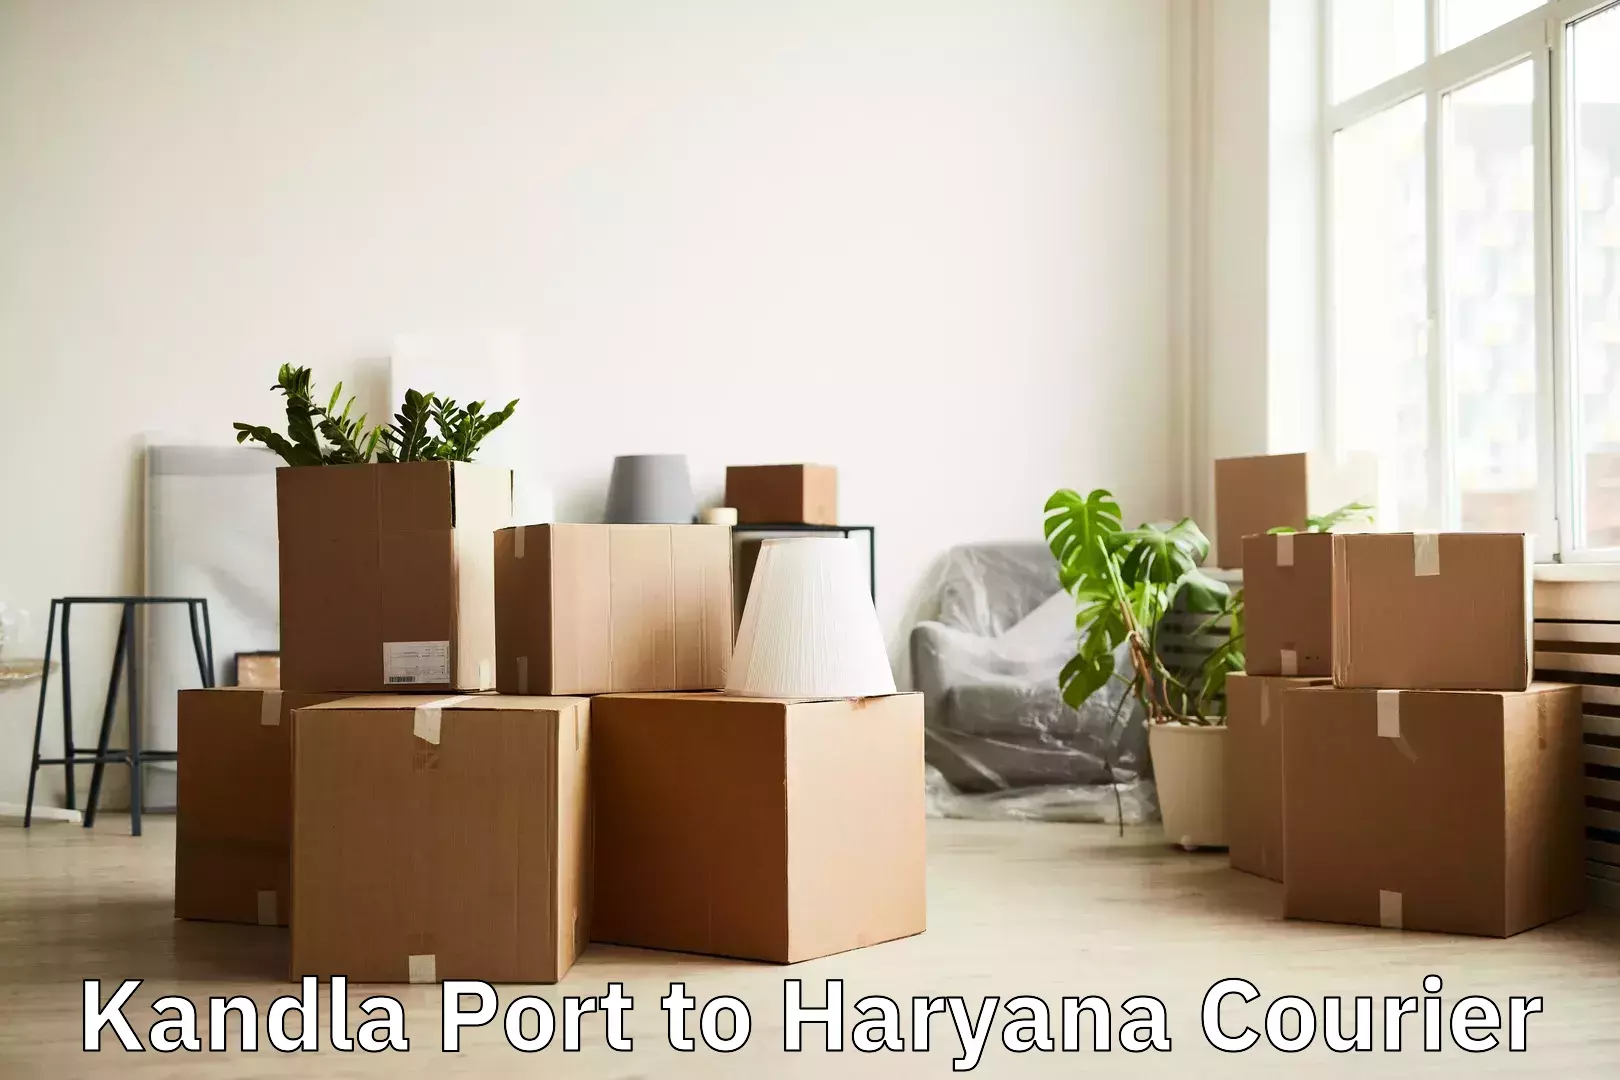 Luggage delivery solutions Kandla Port to Kurukshetra University